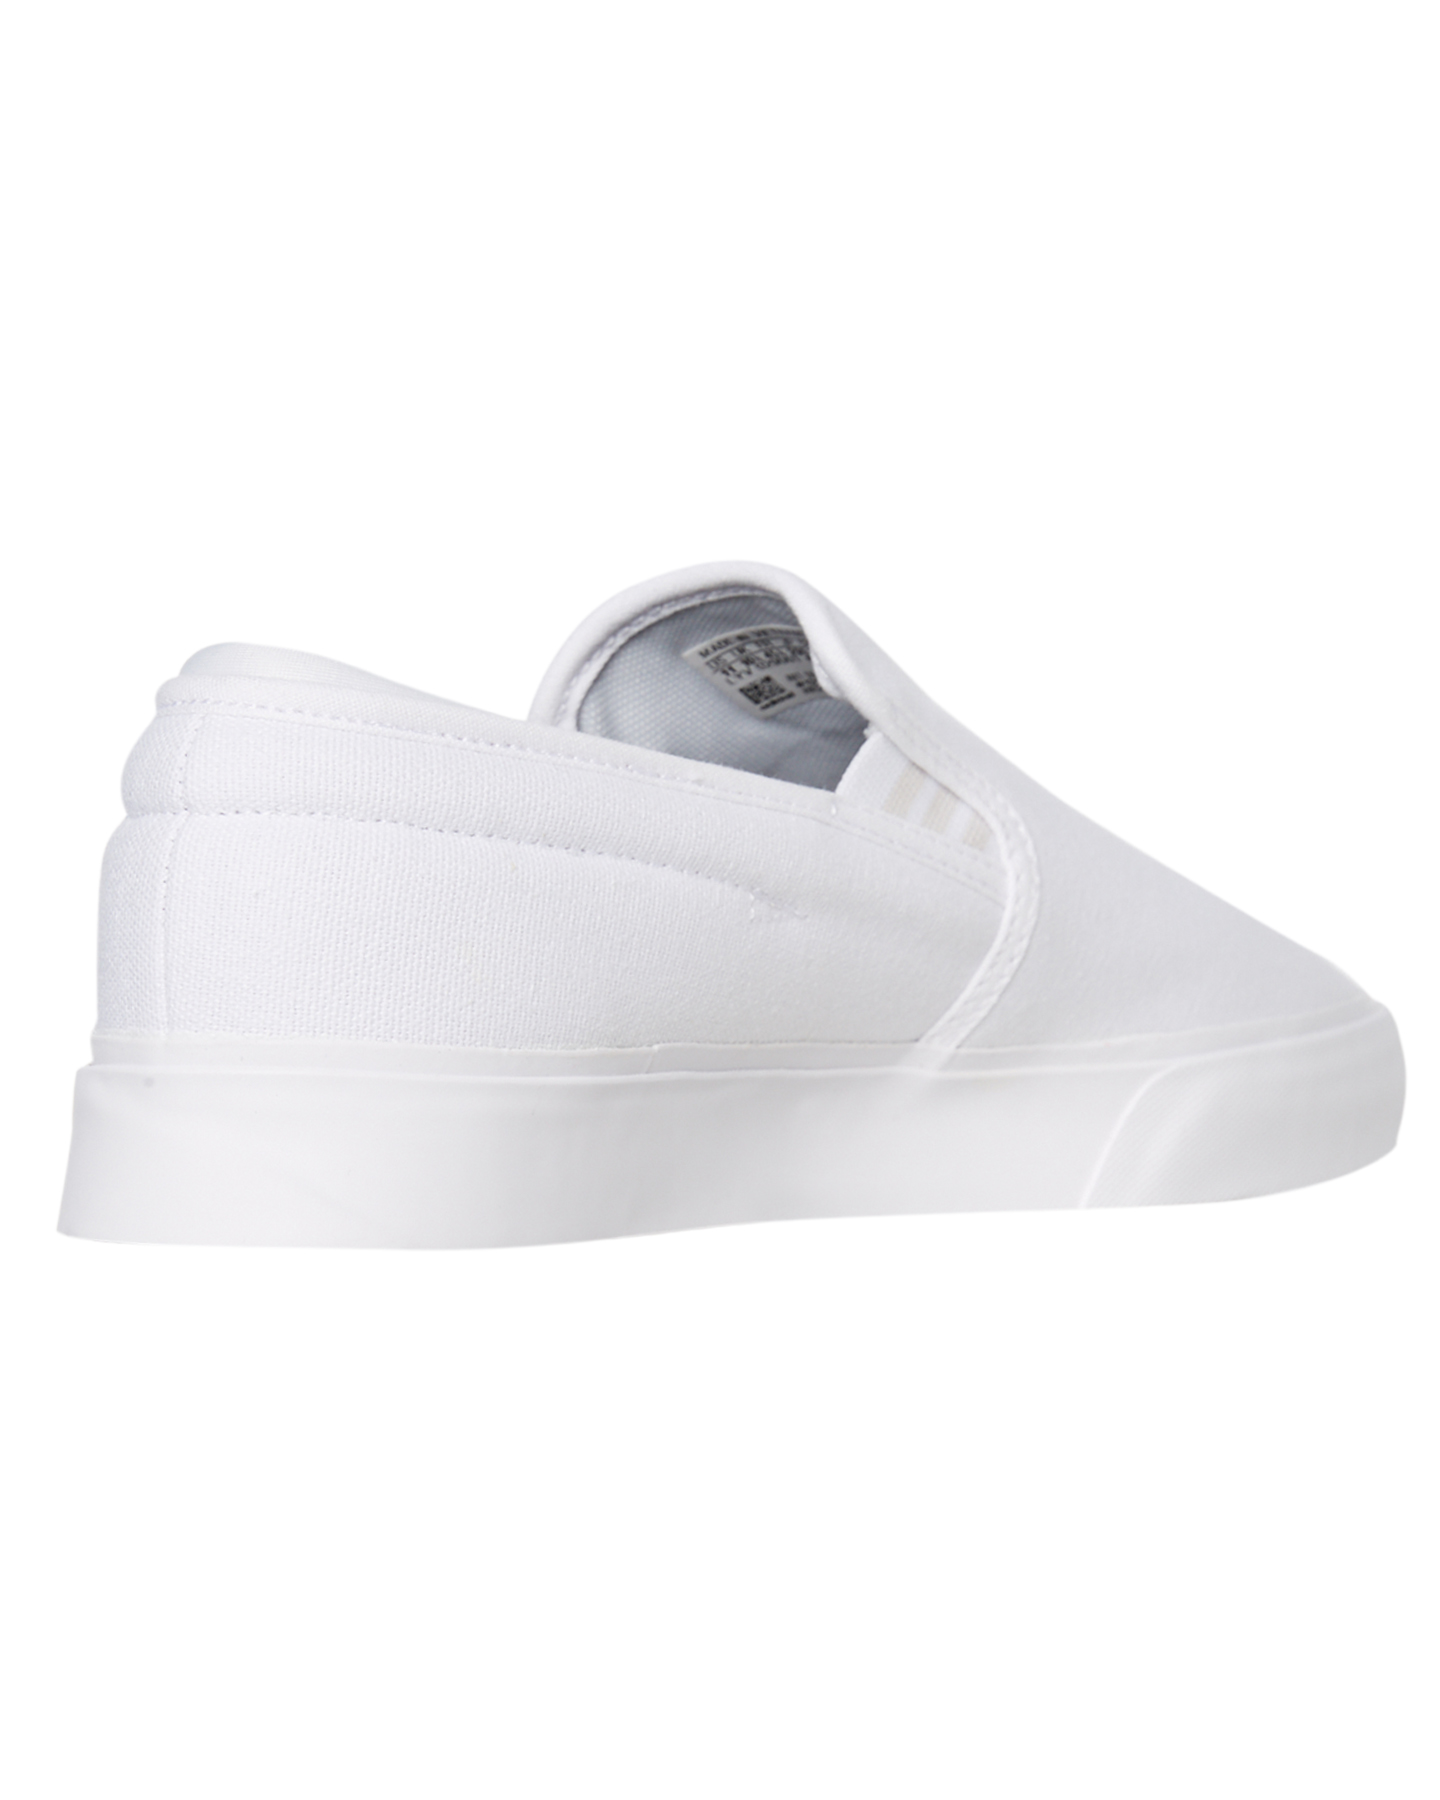 Adidas Sabalo Slip On Shoe - White | SurfStitch